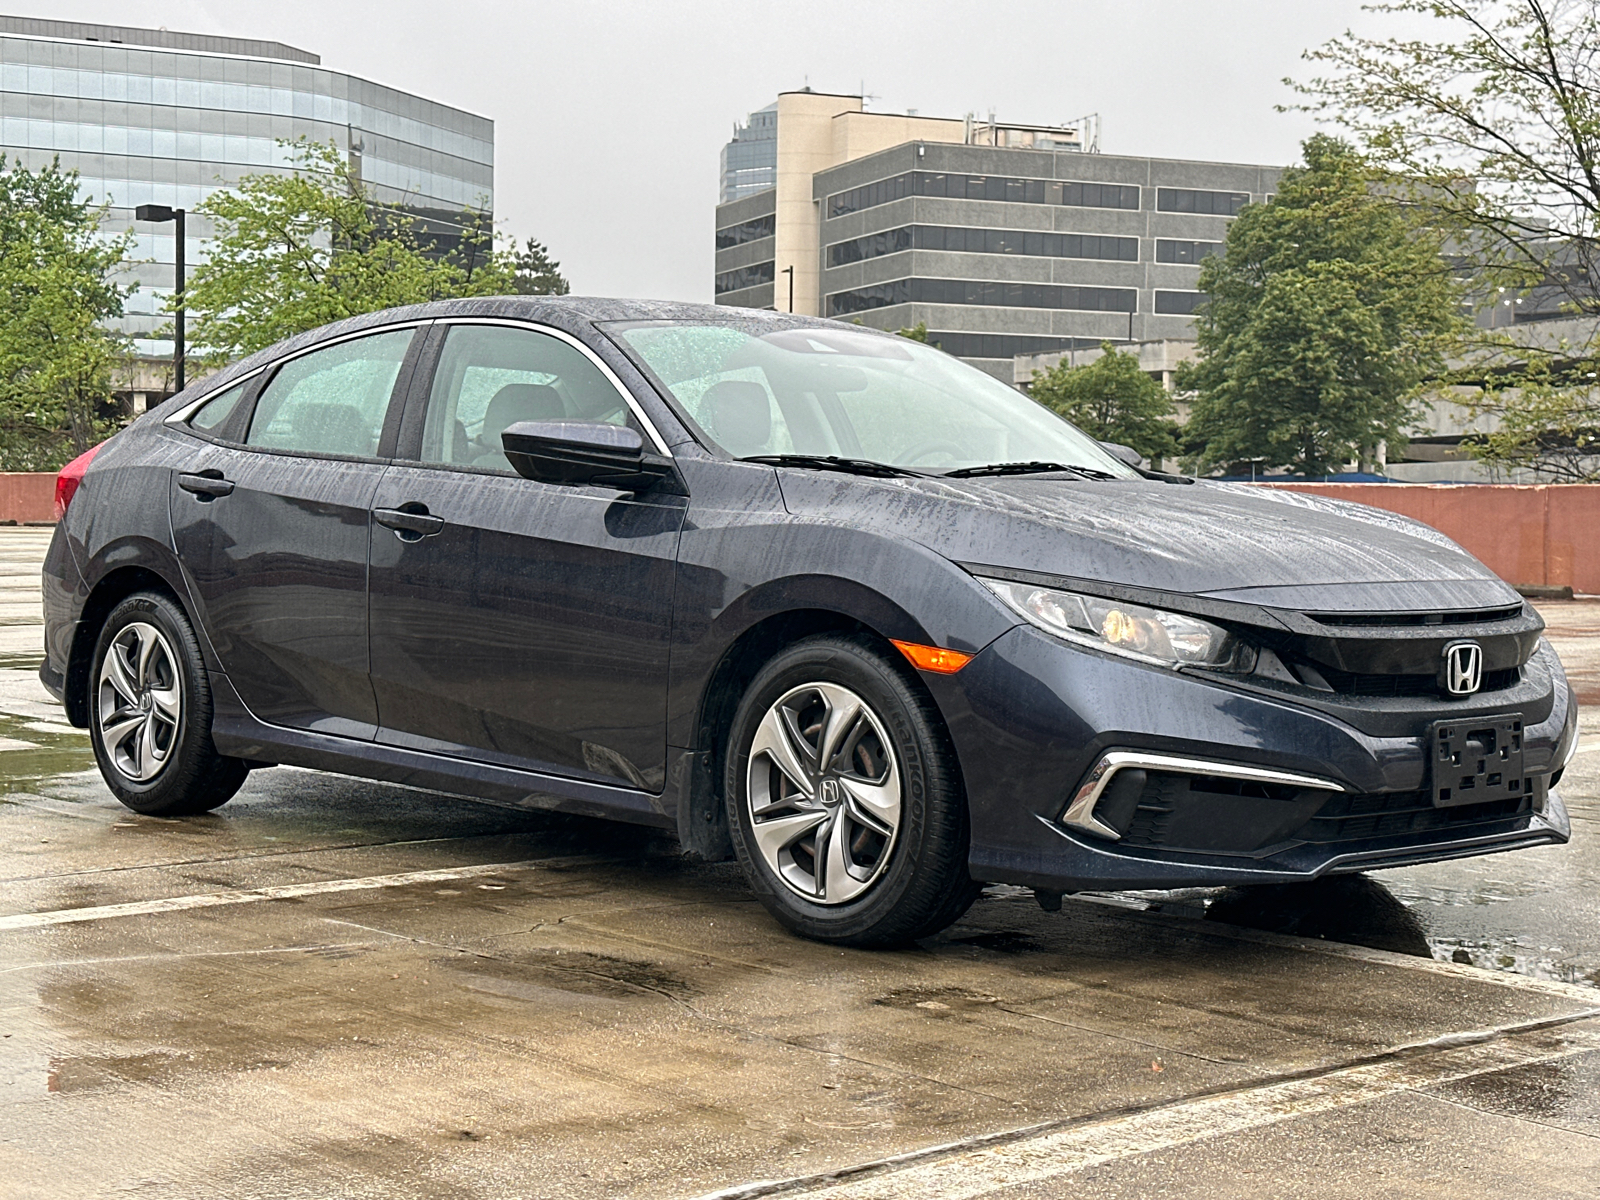 2019 Honda Civic LX 42